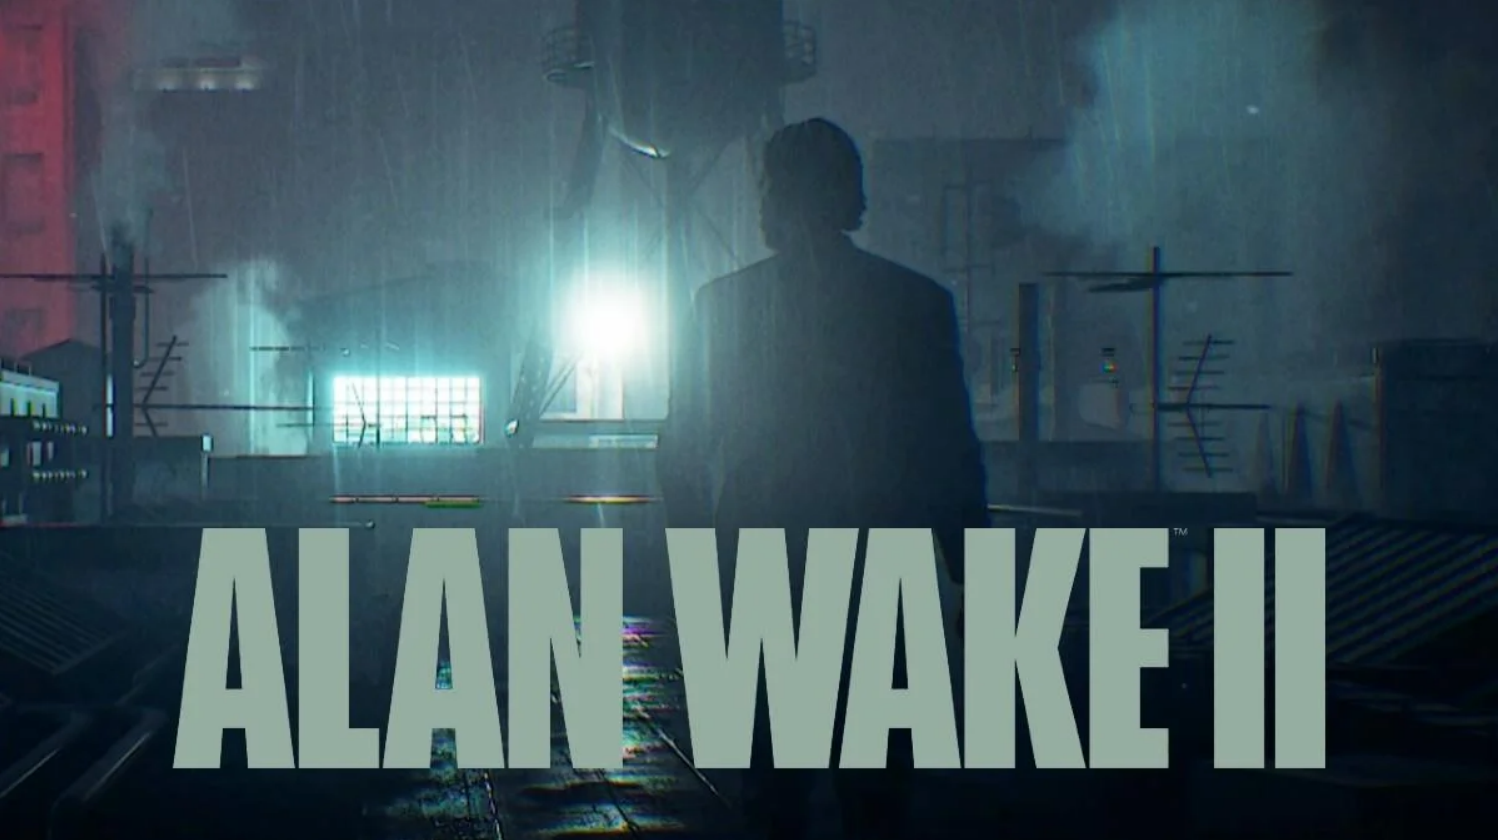 Alan Wake 2 e Baldur's Gate 3 lideram indicações para o The Game Awards  2023. - Gayme Over